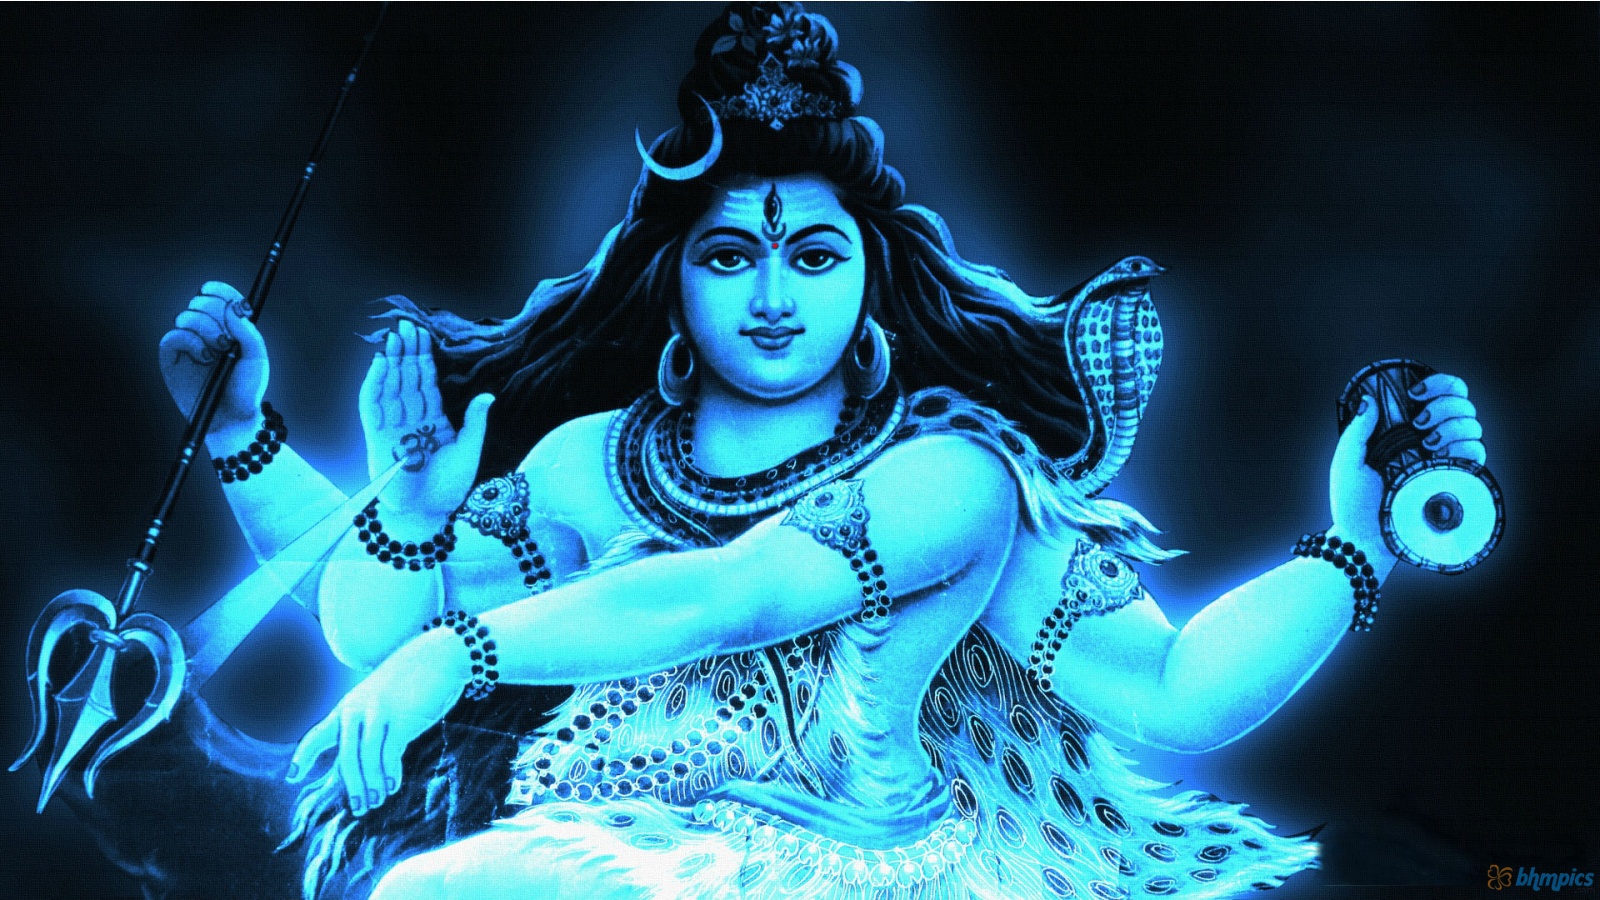 Free download Lord Shiva HD Wallpapers God wallpaper hd [1600x900 ...